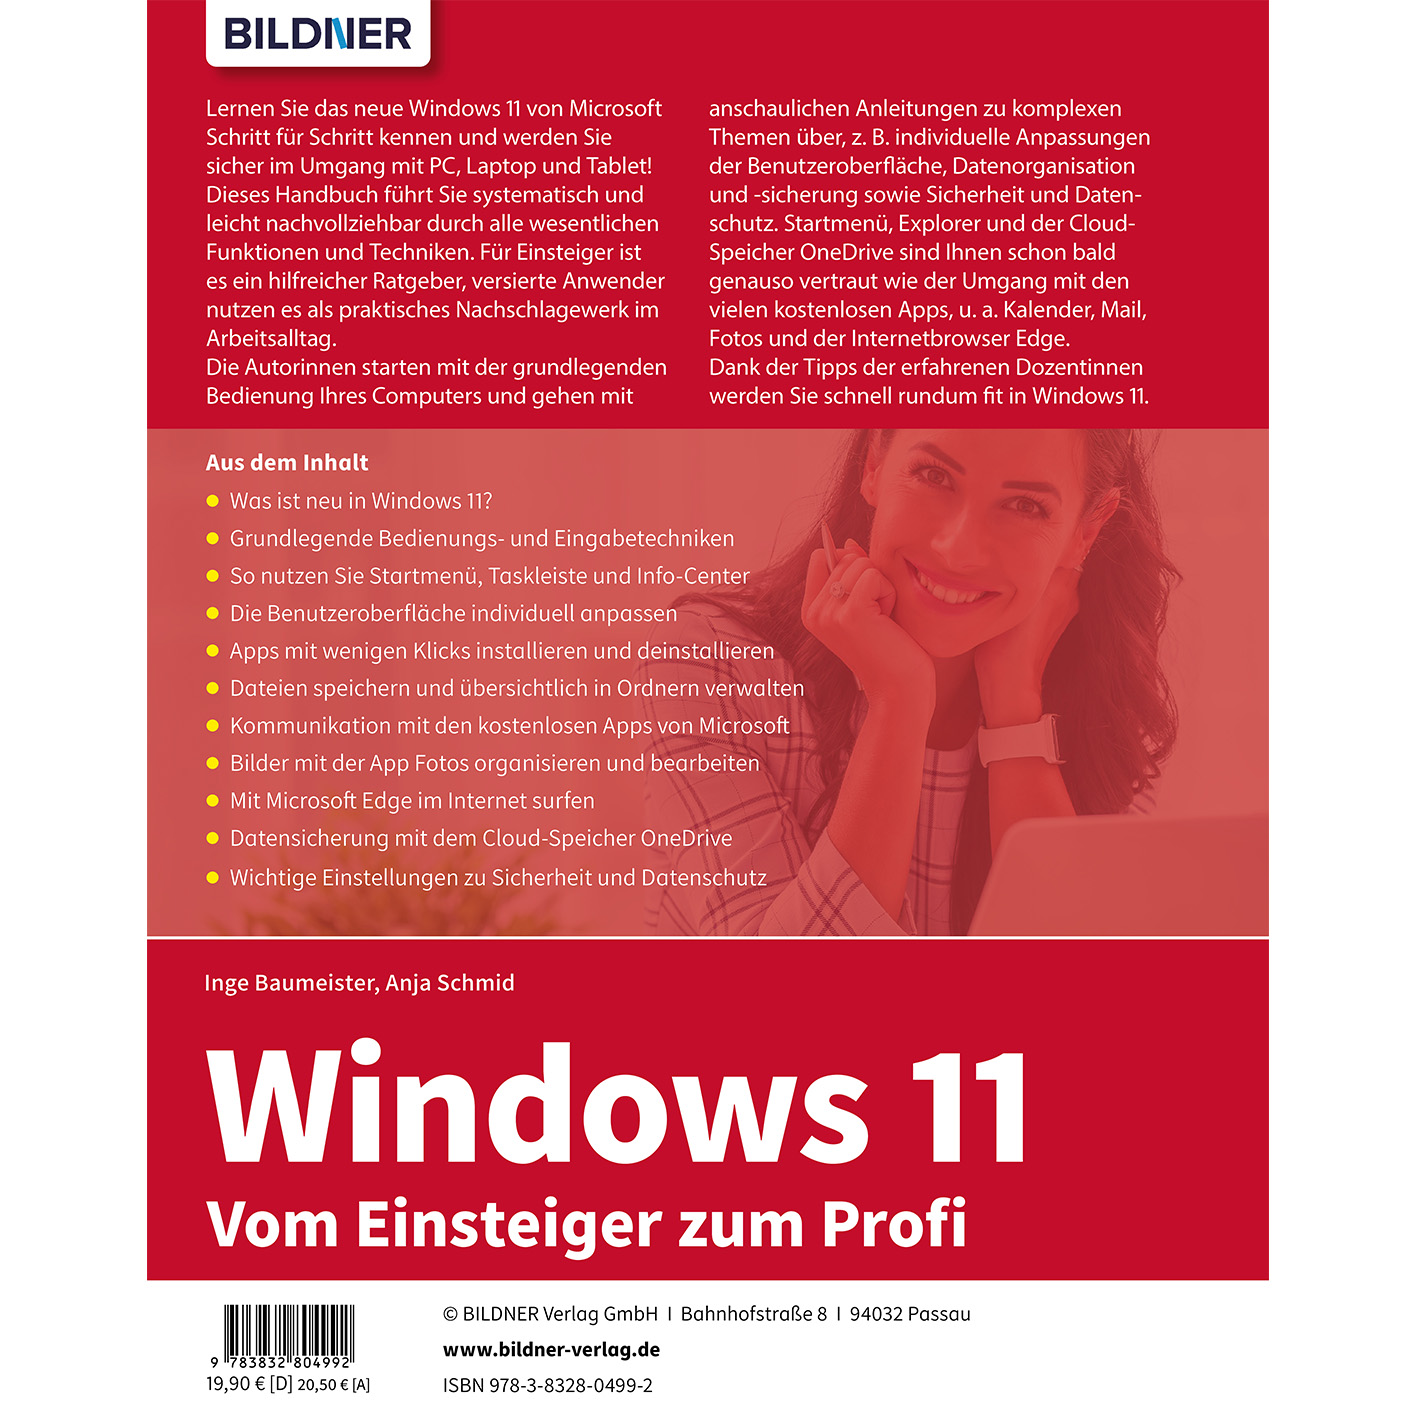 Windows zum Profi - Vom 11 Einsteiger